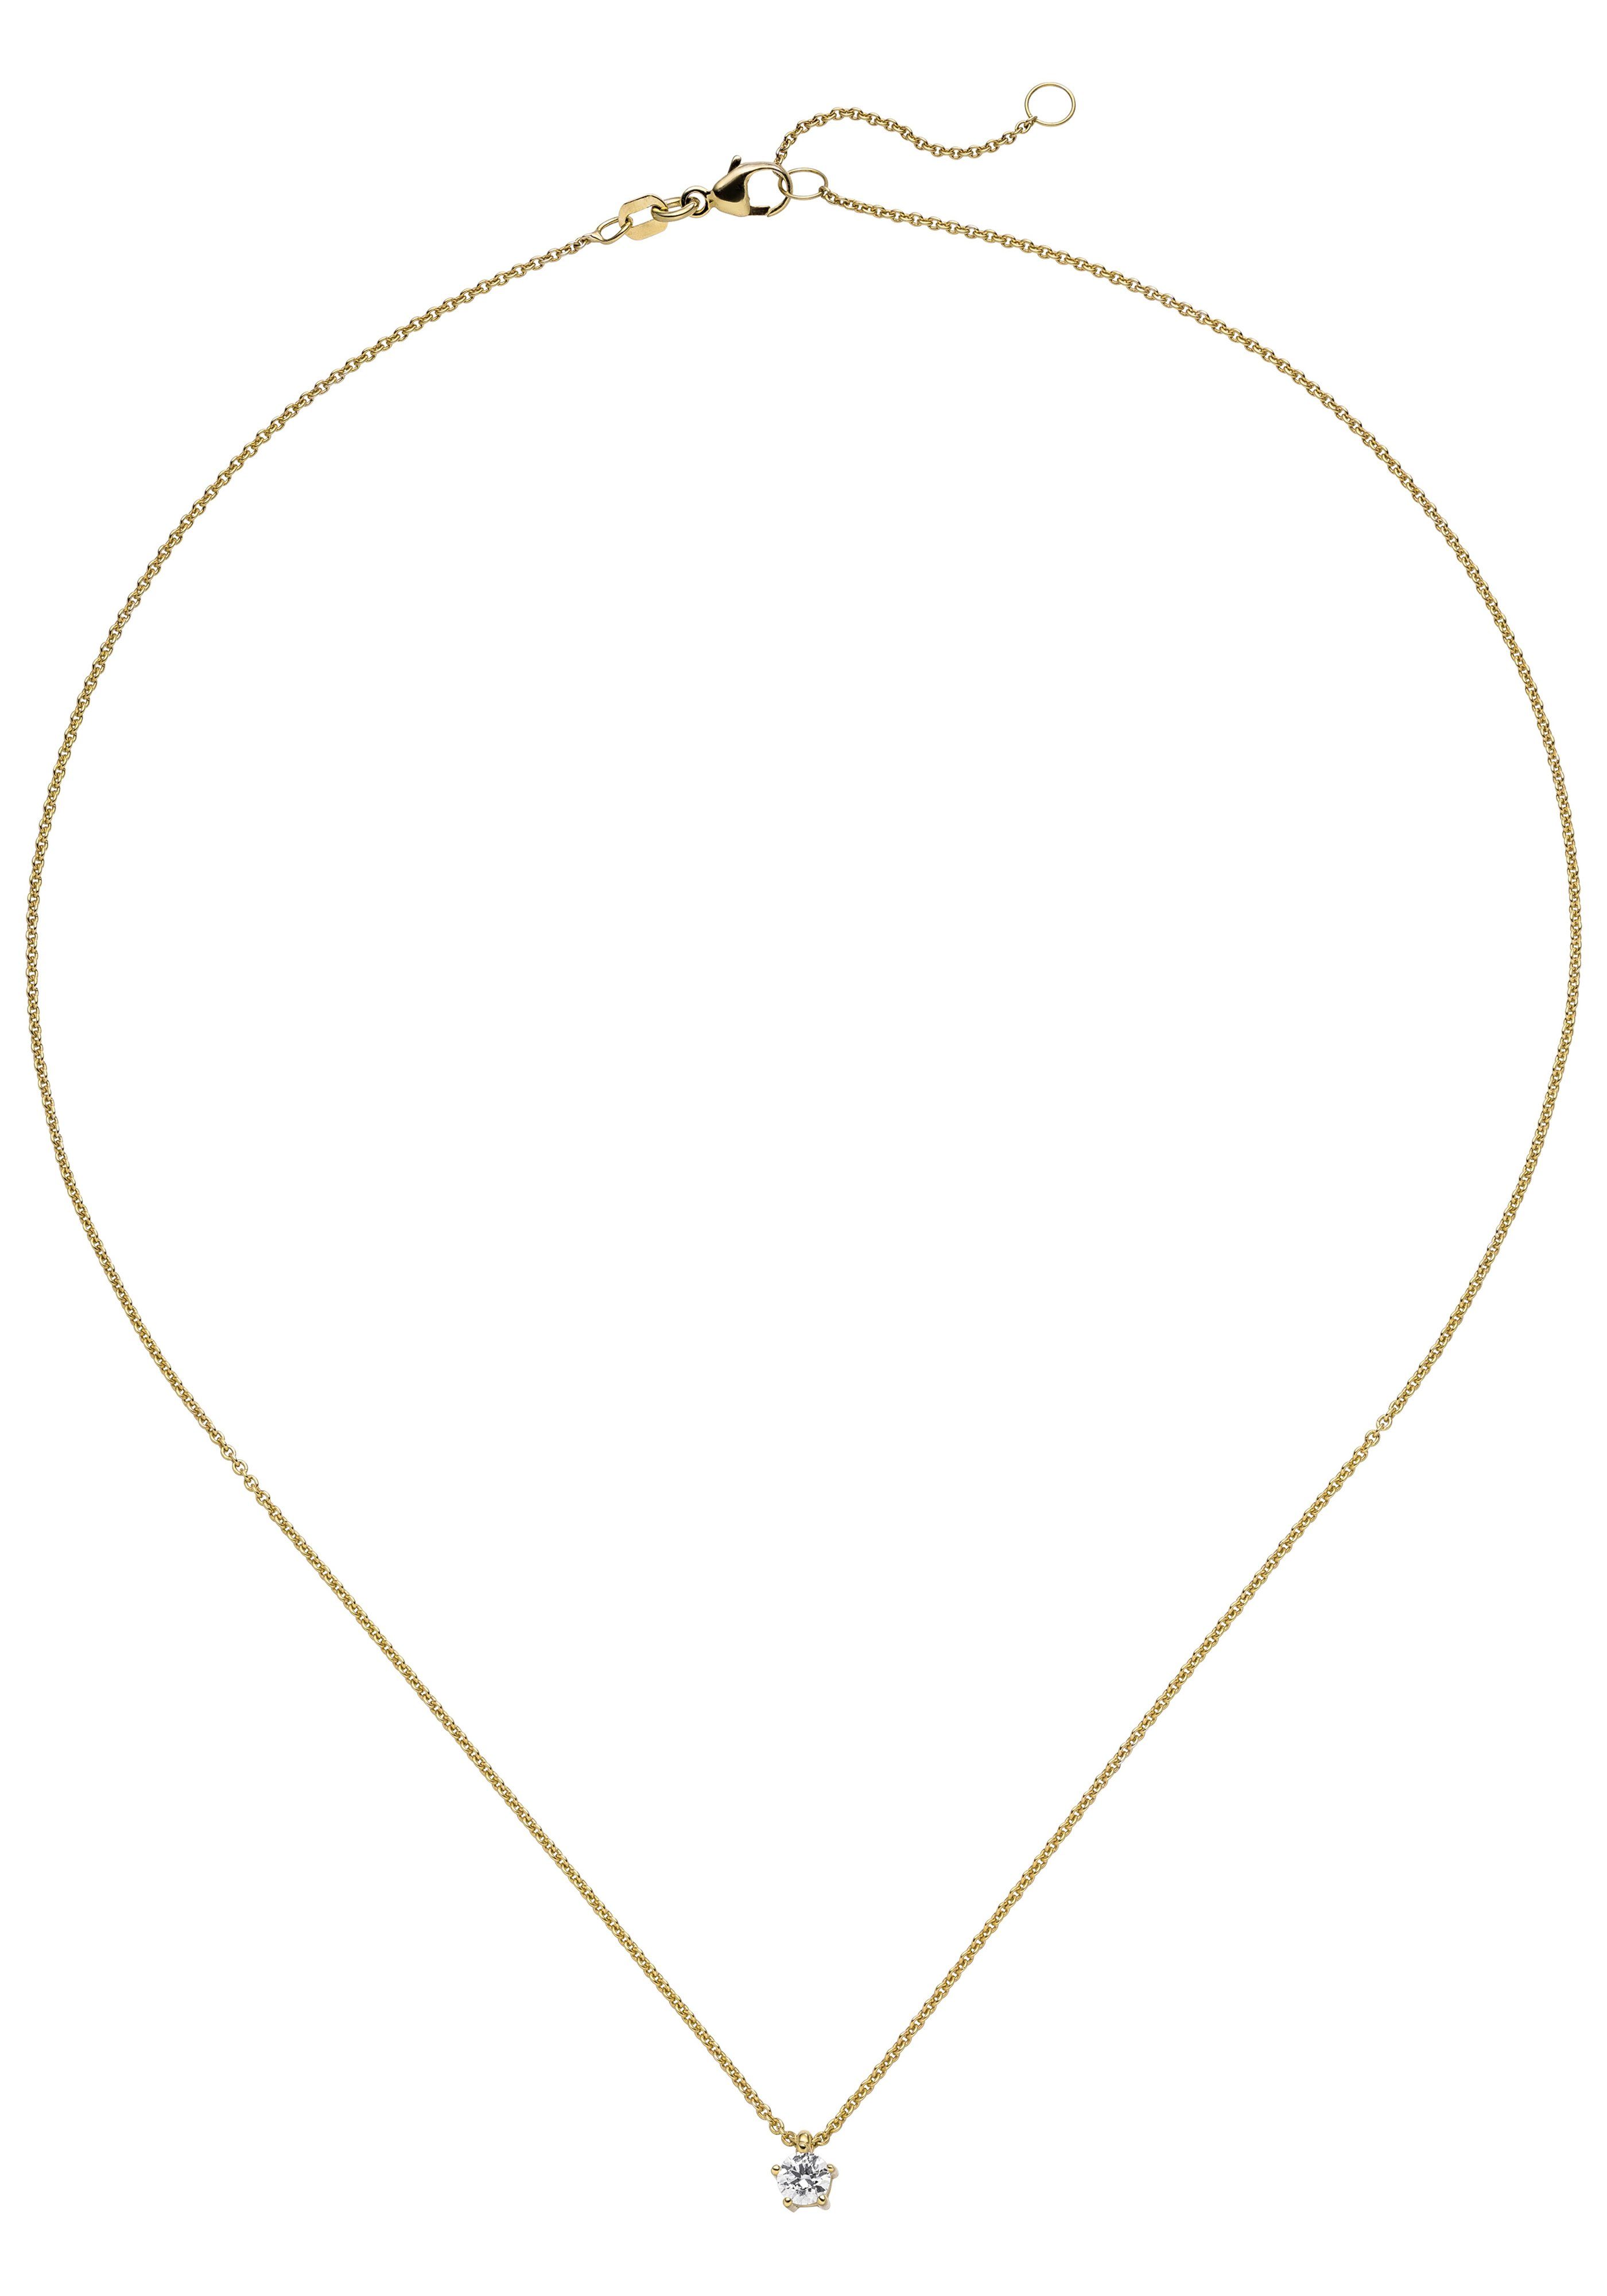 JOBO Kette mit Anhänger Solitär, 585 Gold mit 1 Diamant Brillant 0,15 ct. 45 cm